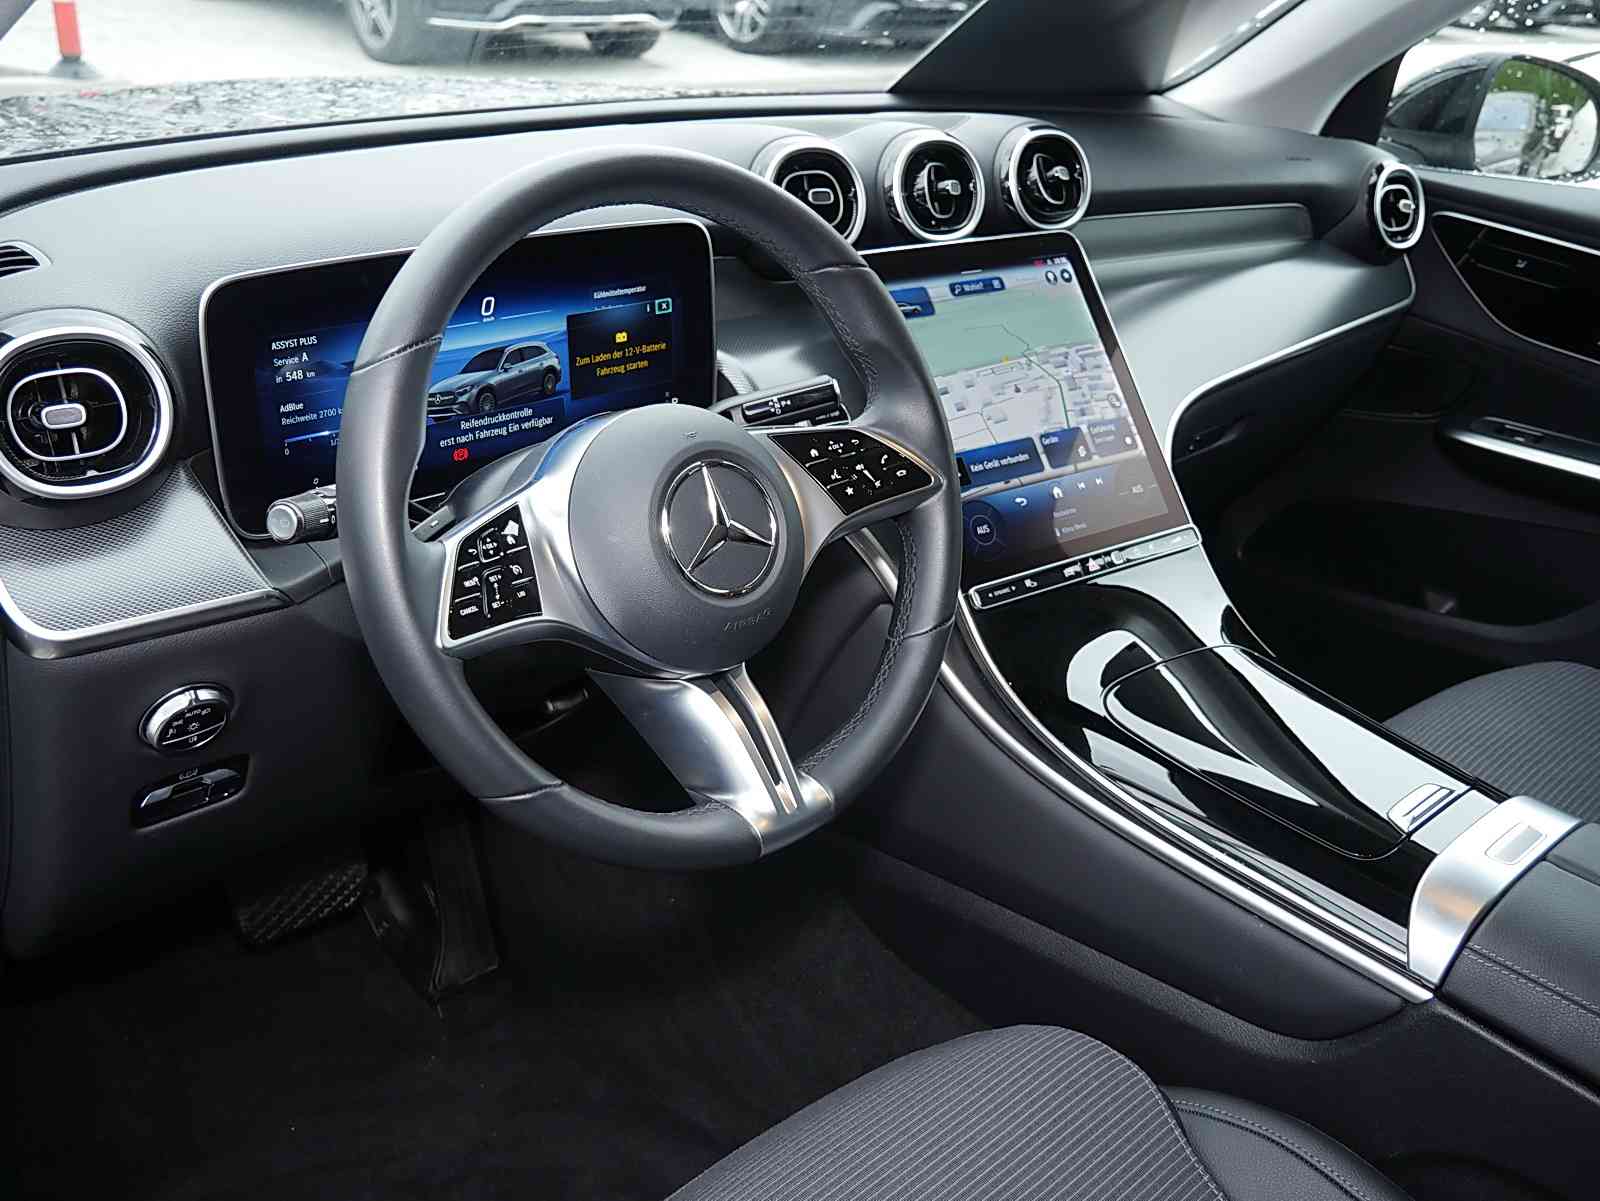 Mercedes-Benz GLC 220 d 4M+AVANTGARDE Advanced+KAMERA+LED+SHZ+ 